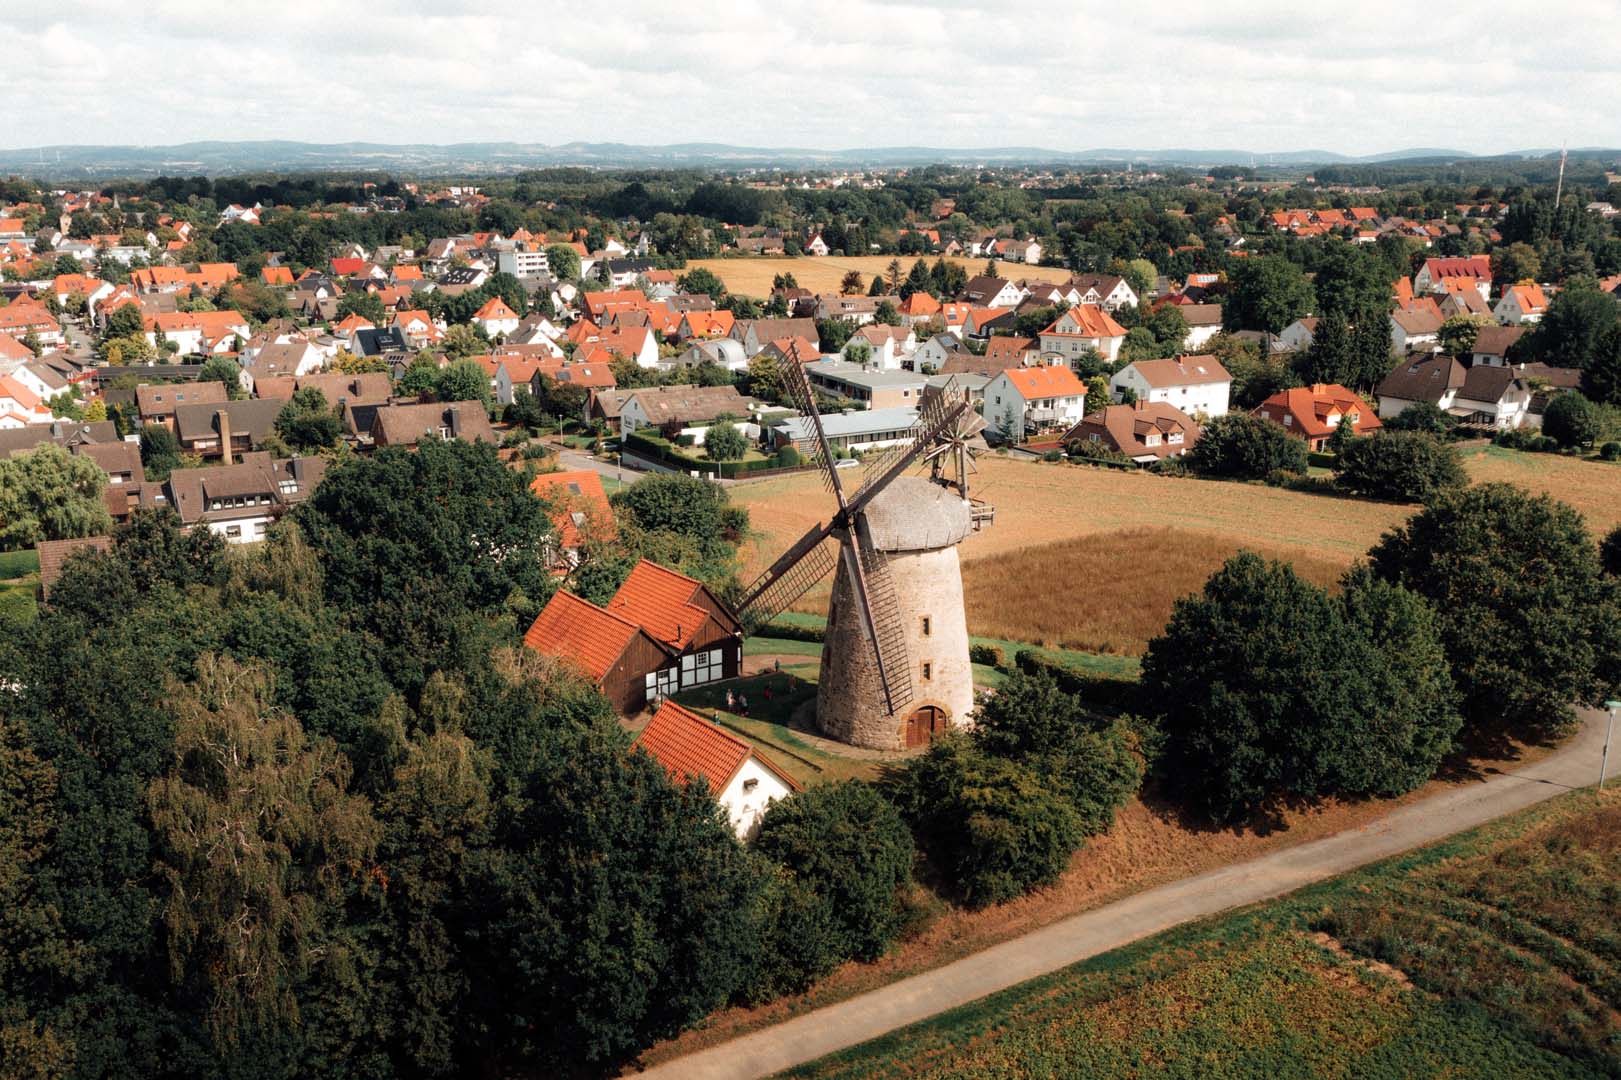 Blick auf die Windmühle Meißen in Minden und di umliegenden Felder und Häuser